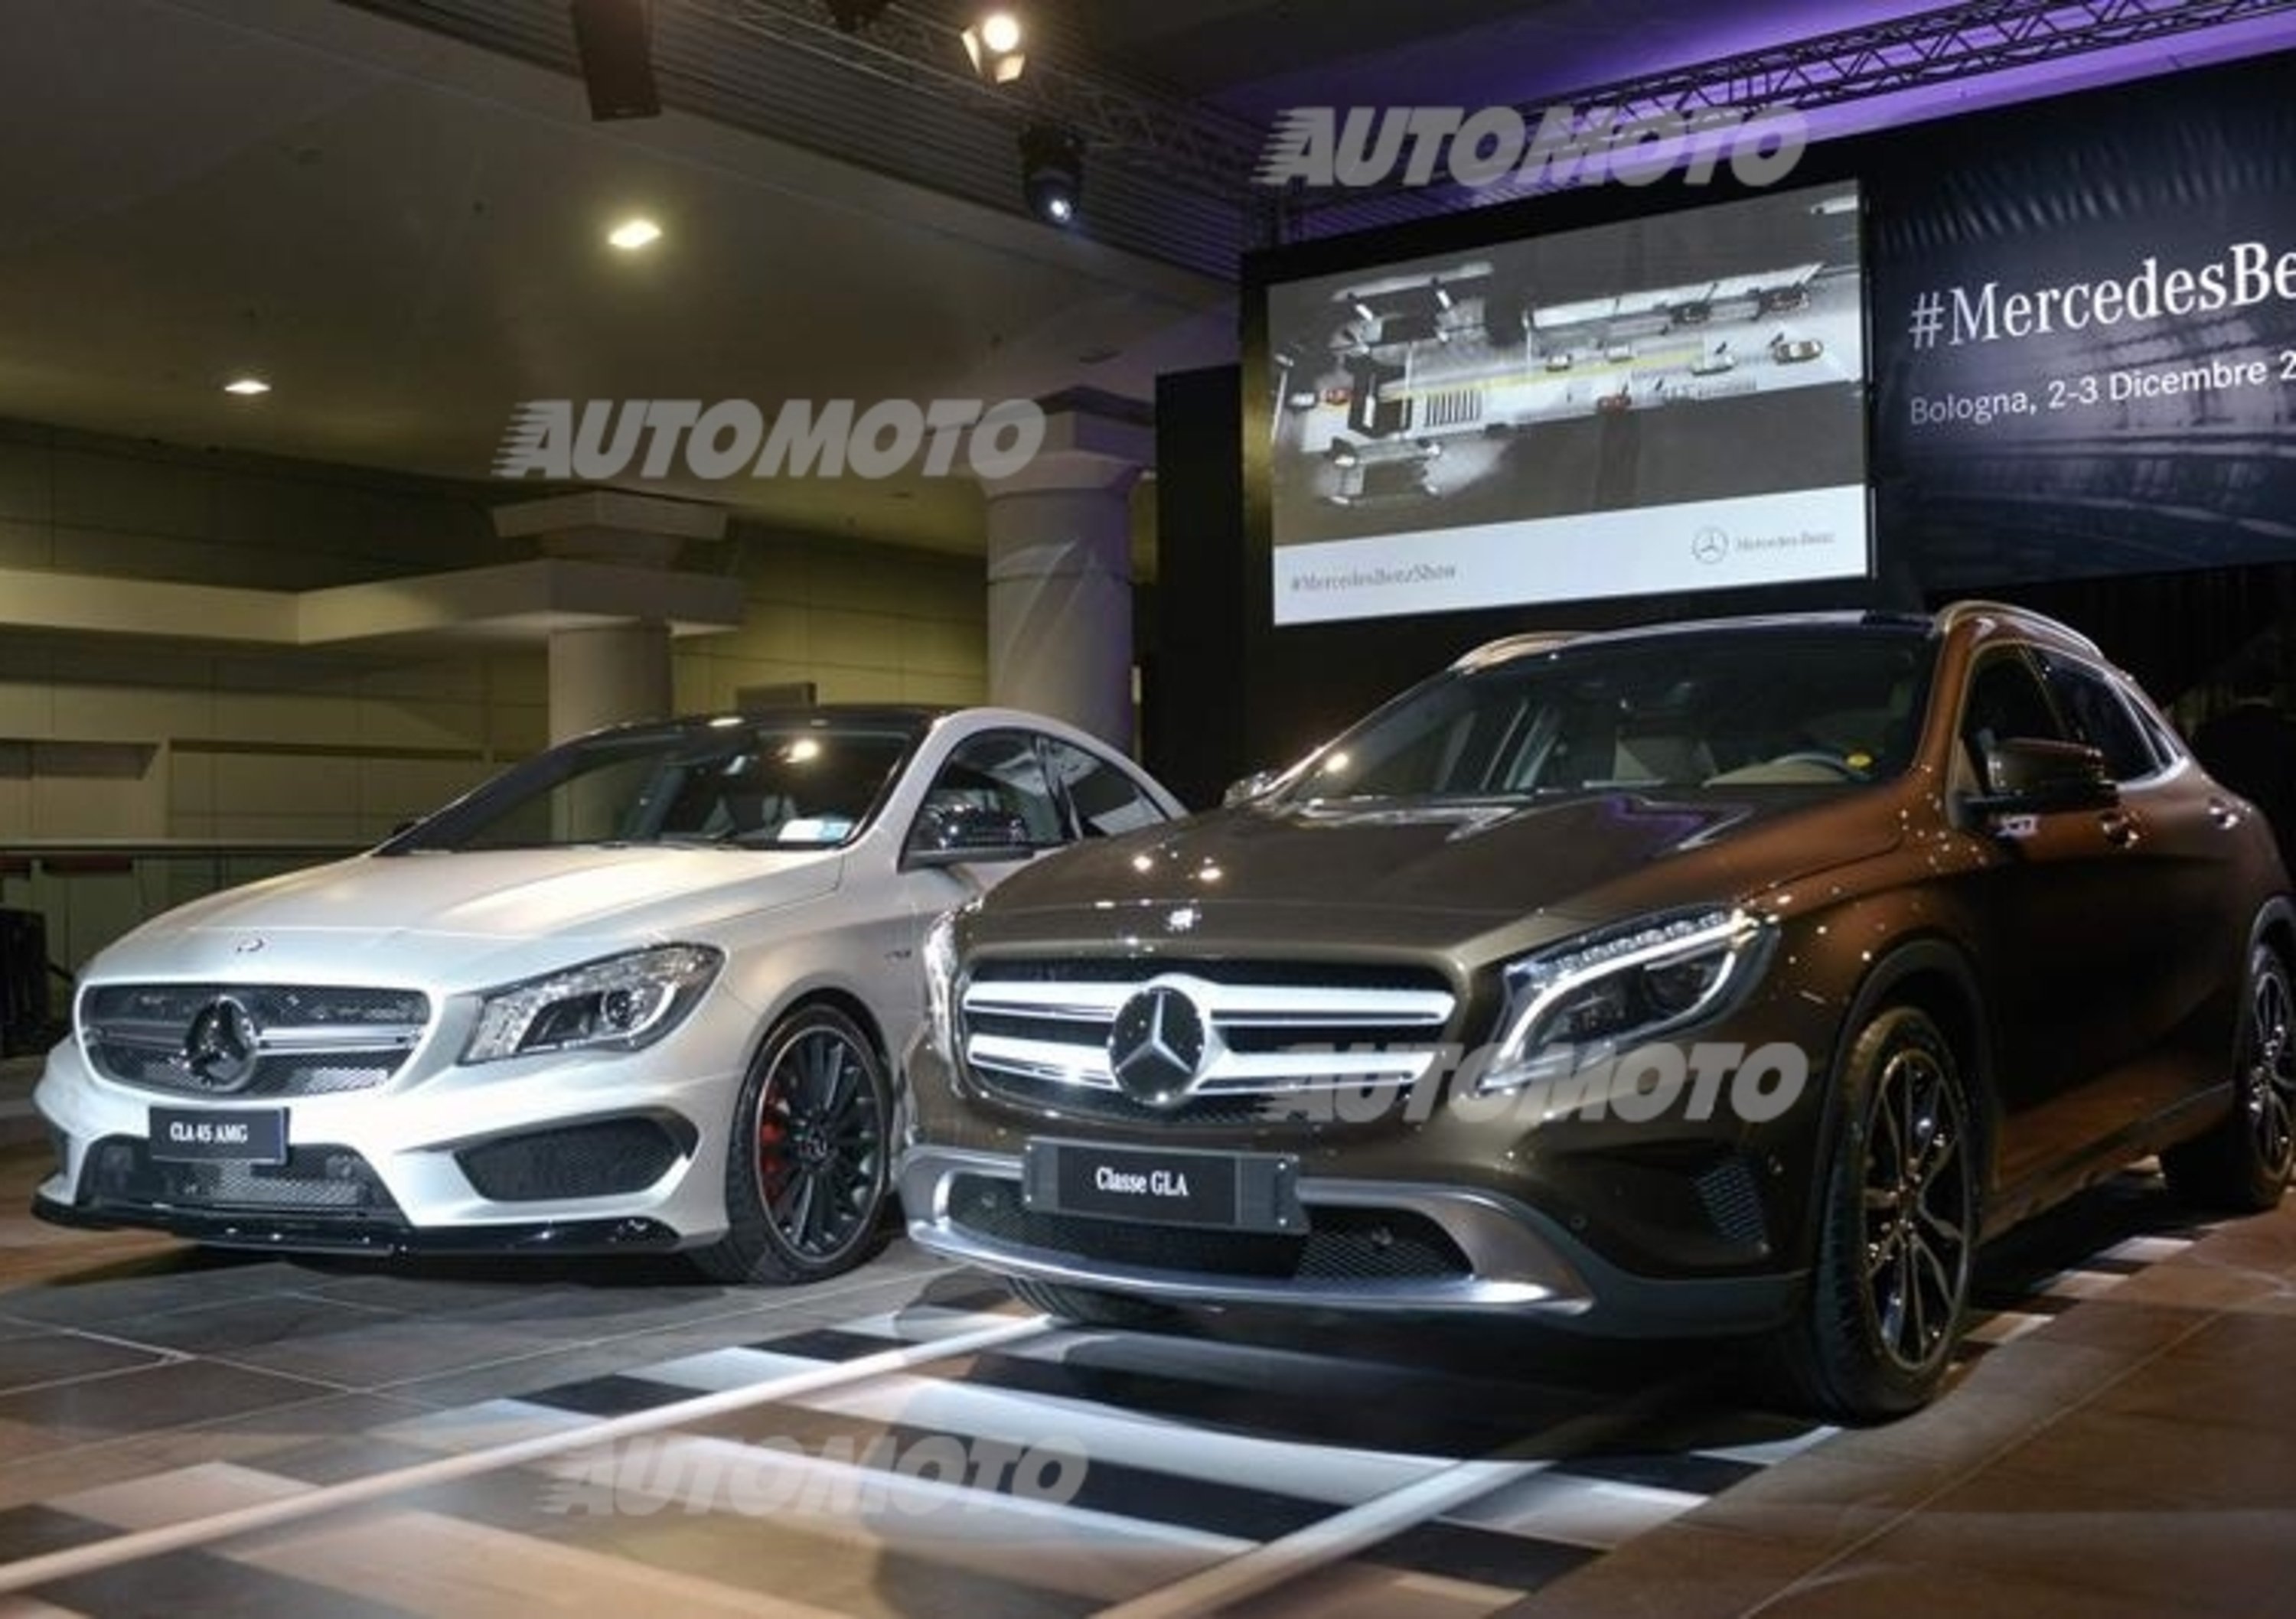 Mercedes-Benz, reinventare i processi per migliorare i risultati